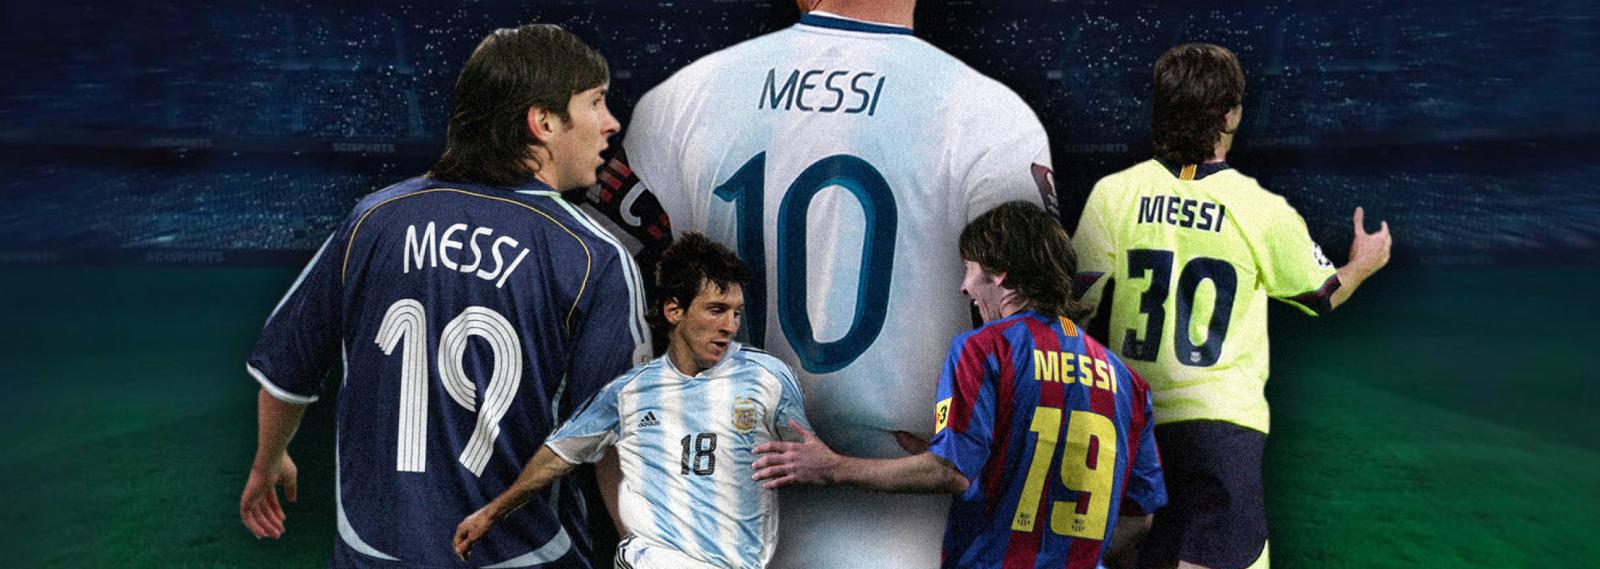 ¿Qué números ha tenido Messi